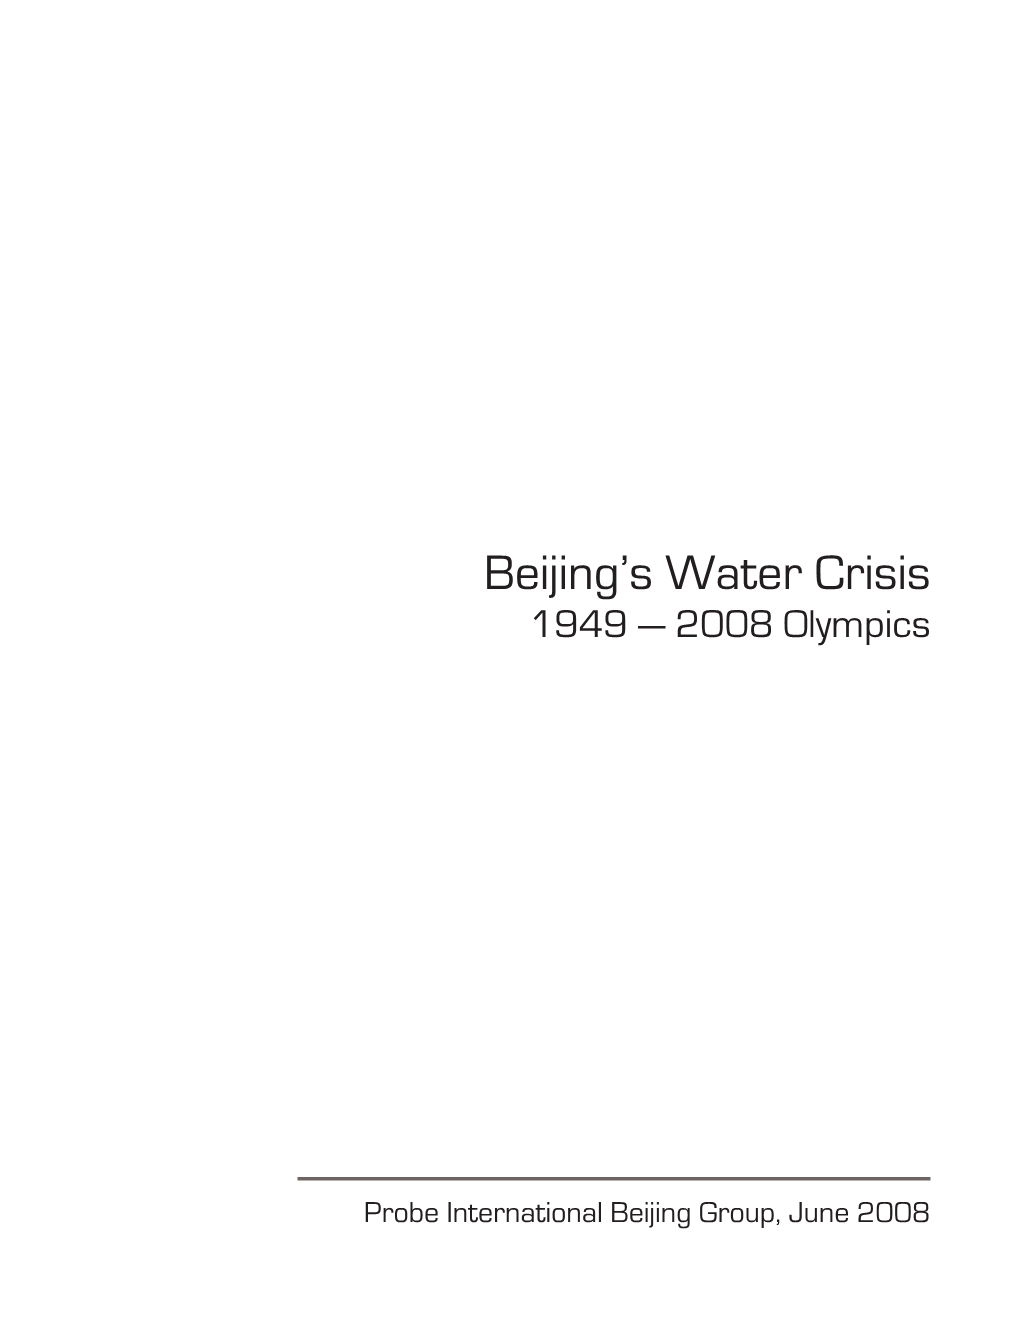 Beijing's Water Crisis (1949 — 2008 Olympics)